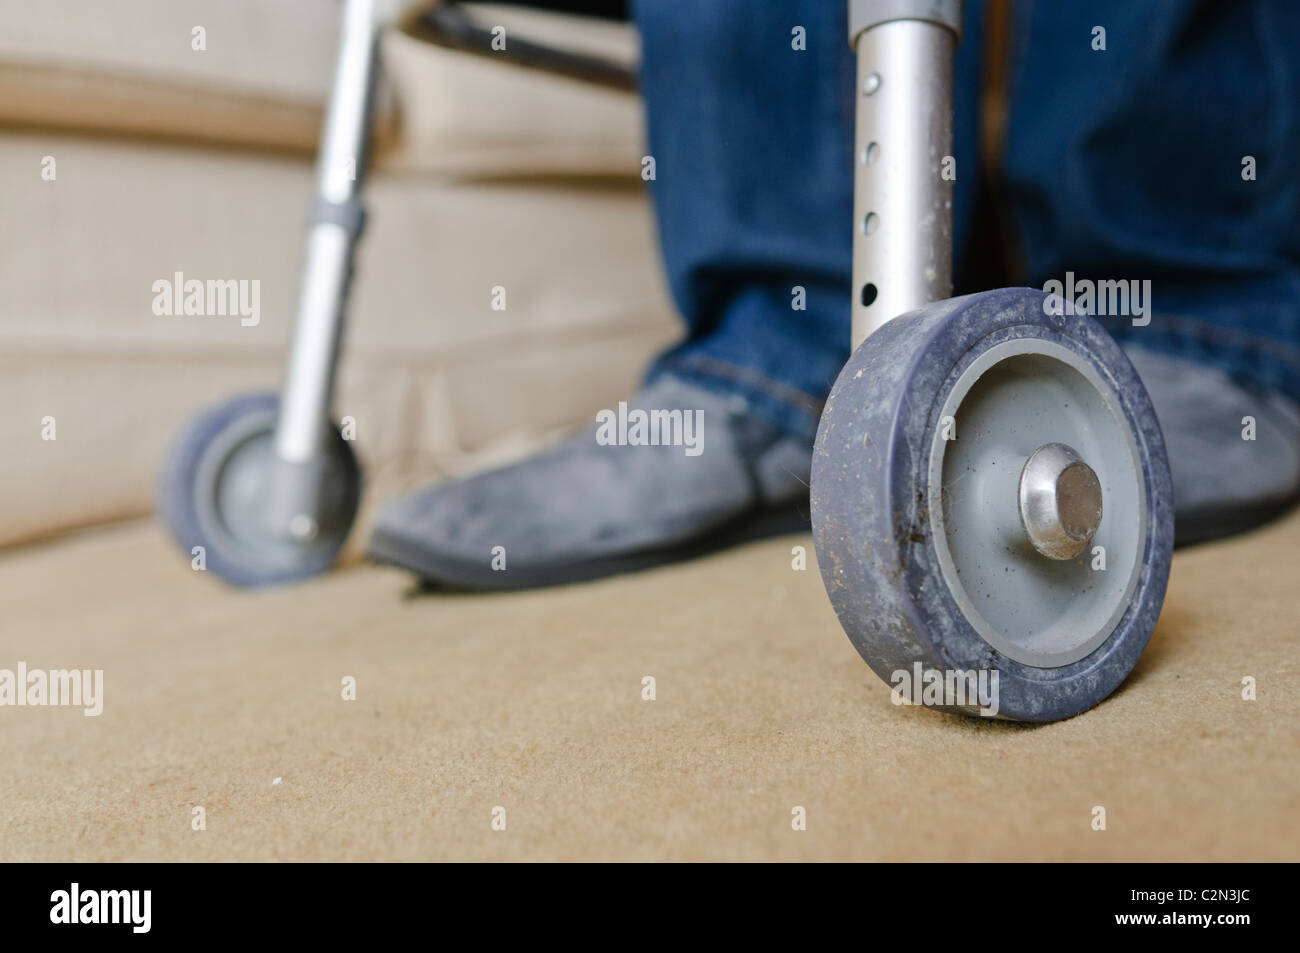 Mann in den 40ern mit einem Fuß Hilfe Frame aufgrund der Unfähigkeit wegen rheumatoider Arthritis und Gelenkschmerzen zu gehen. Stockfoto